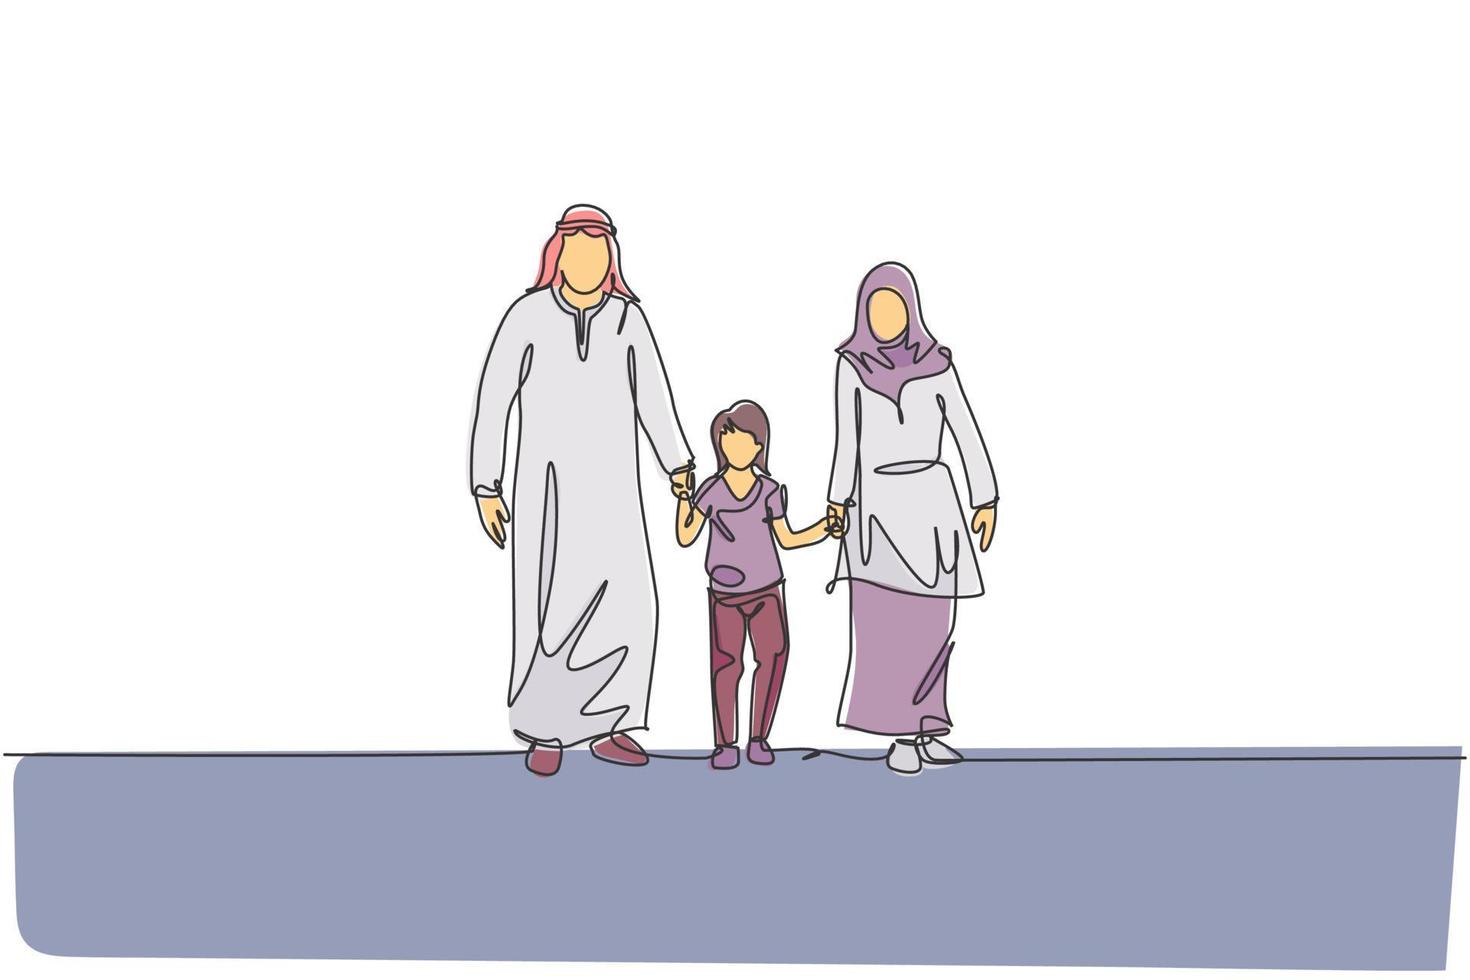 disegno a linea continua di giovani mamma e papà arabi che camminano e tengono insieme la mano della figlia. concetto di genitorialità famiglia felice musulmana islamica. illustrazione vettoriale di disegno di una linea di disegno